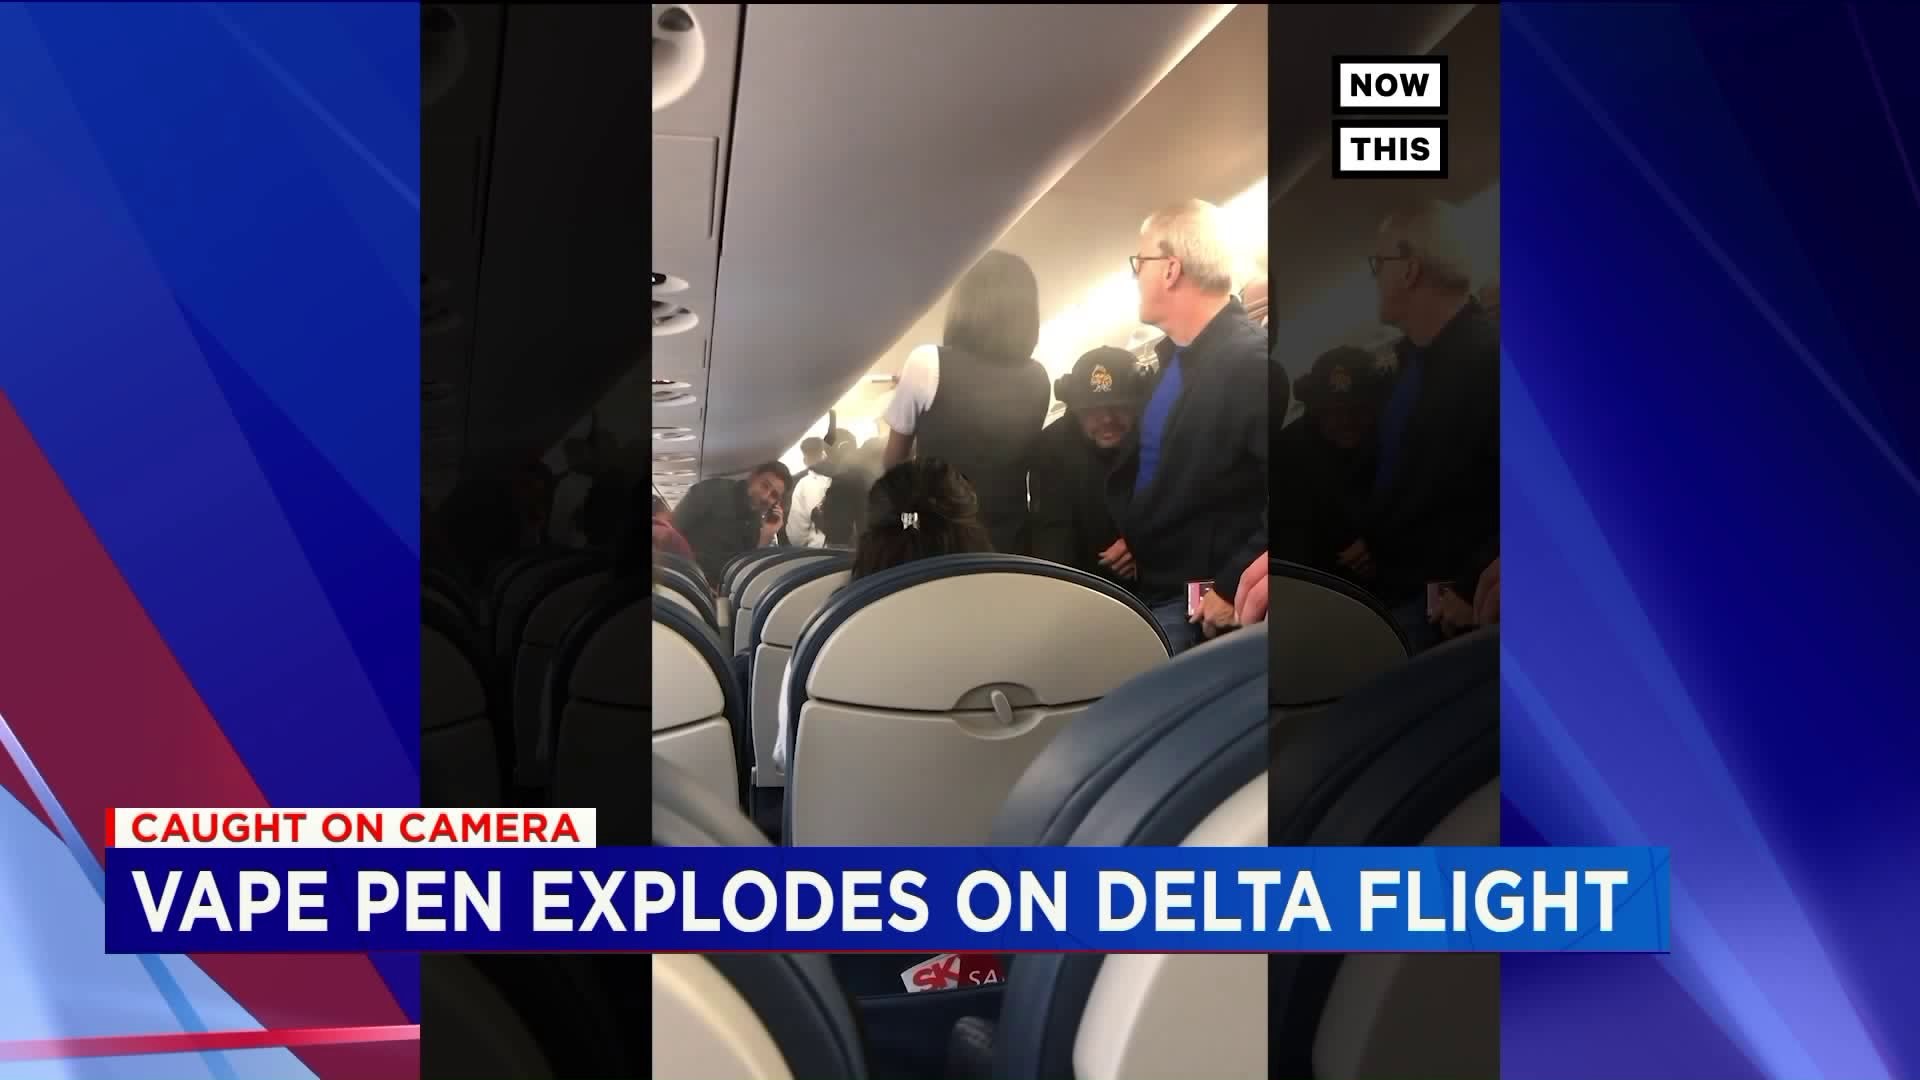 Vape pen explodes on plane